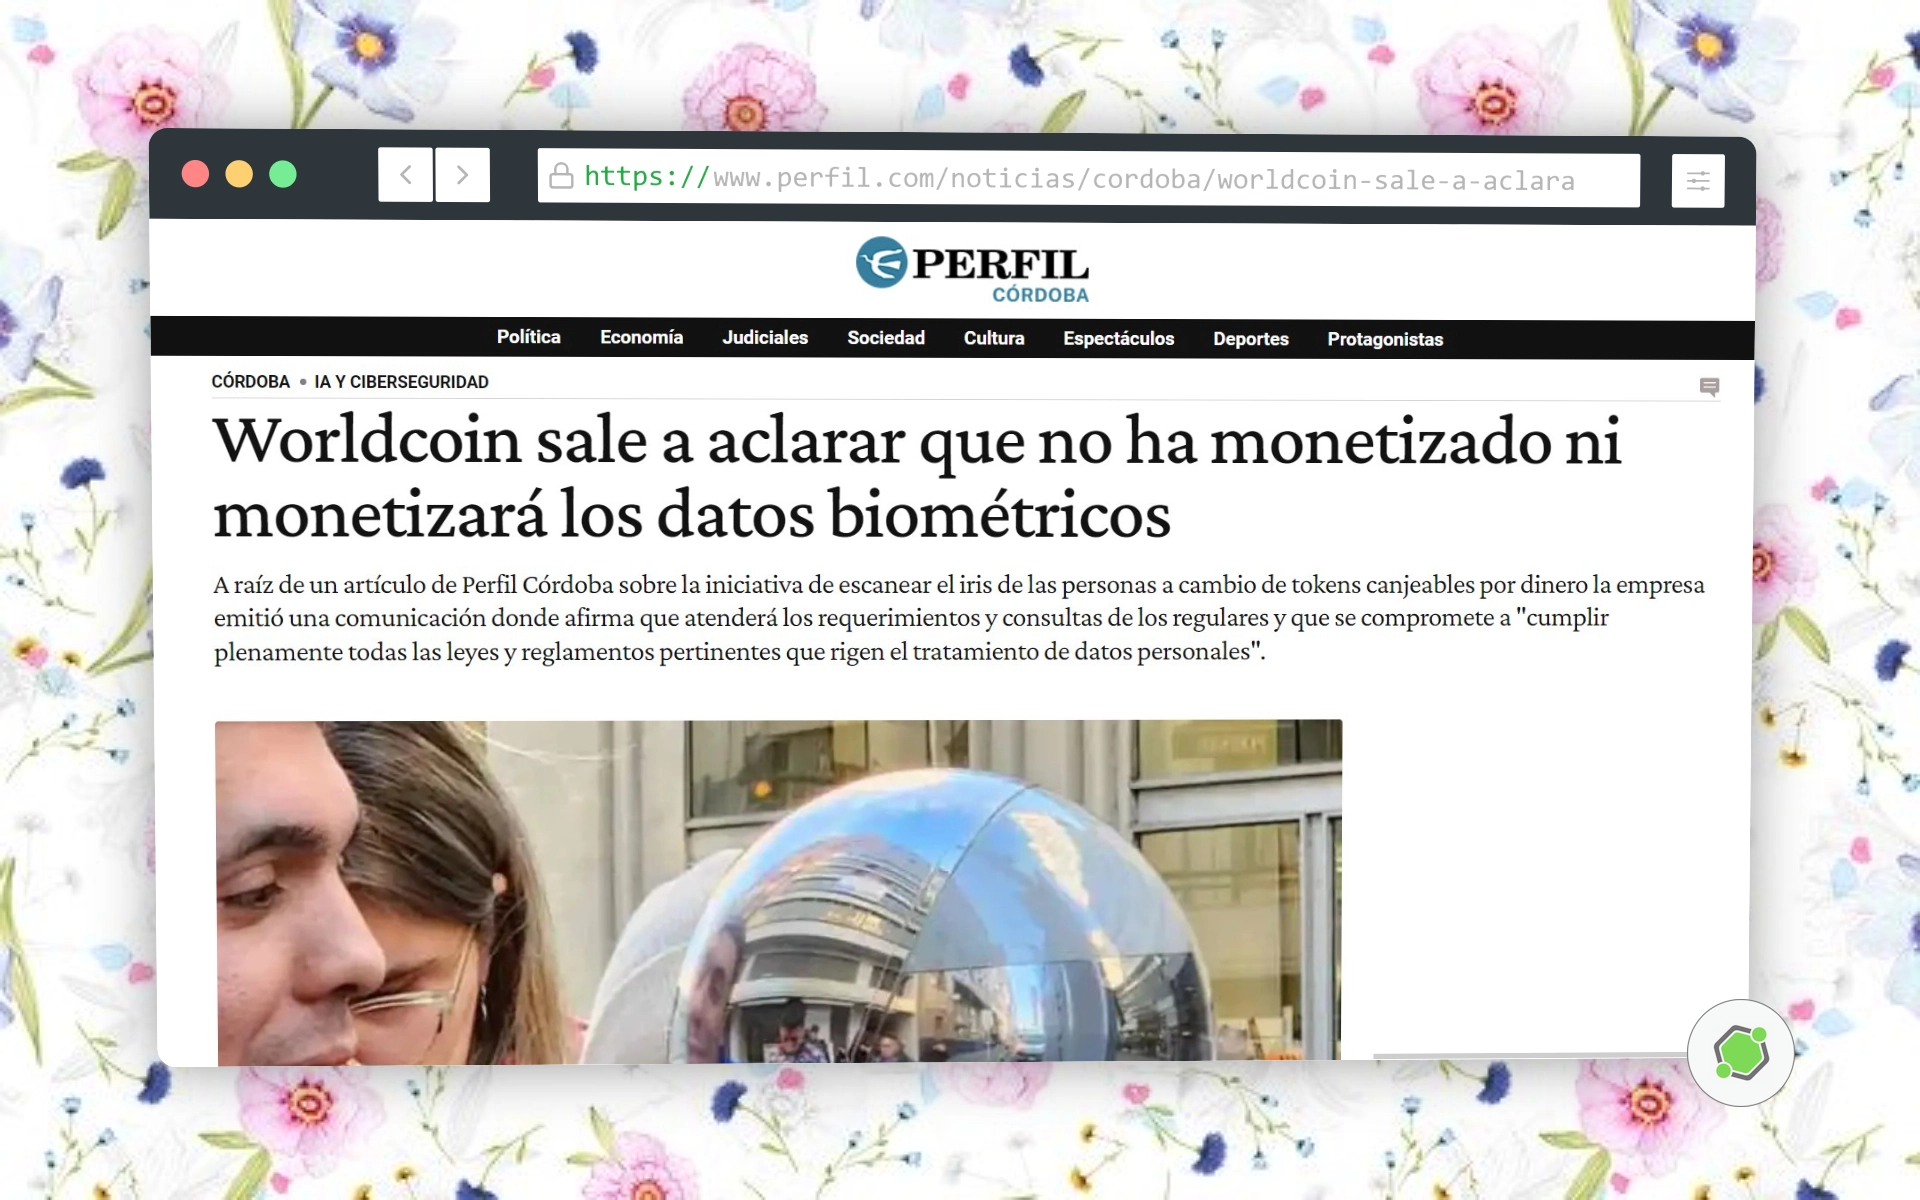 Publicación sobre el proyecto Worldcoin en el diario de Perfil de Córdoba.